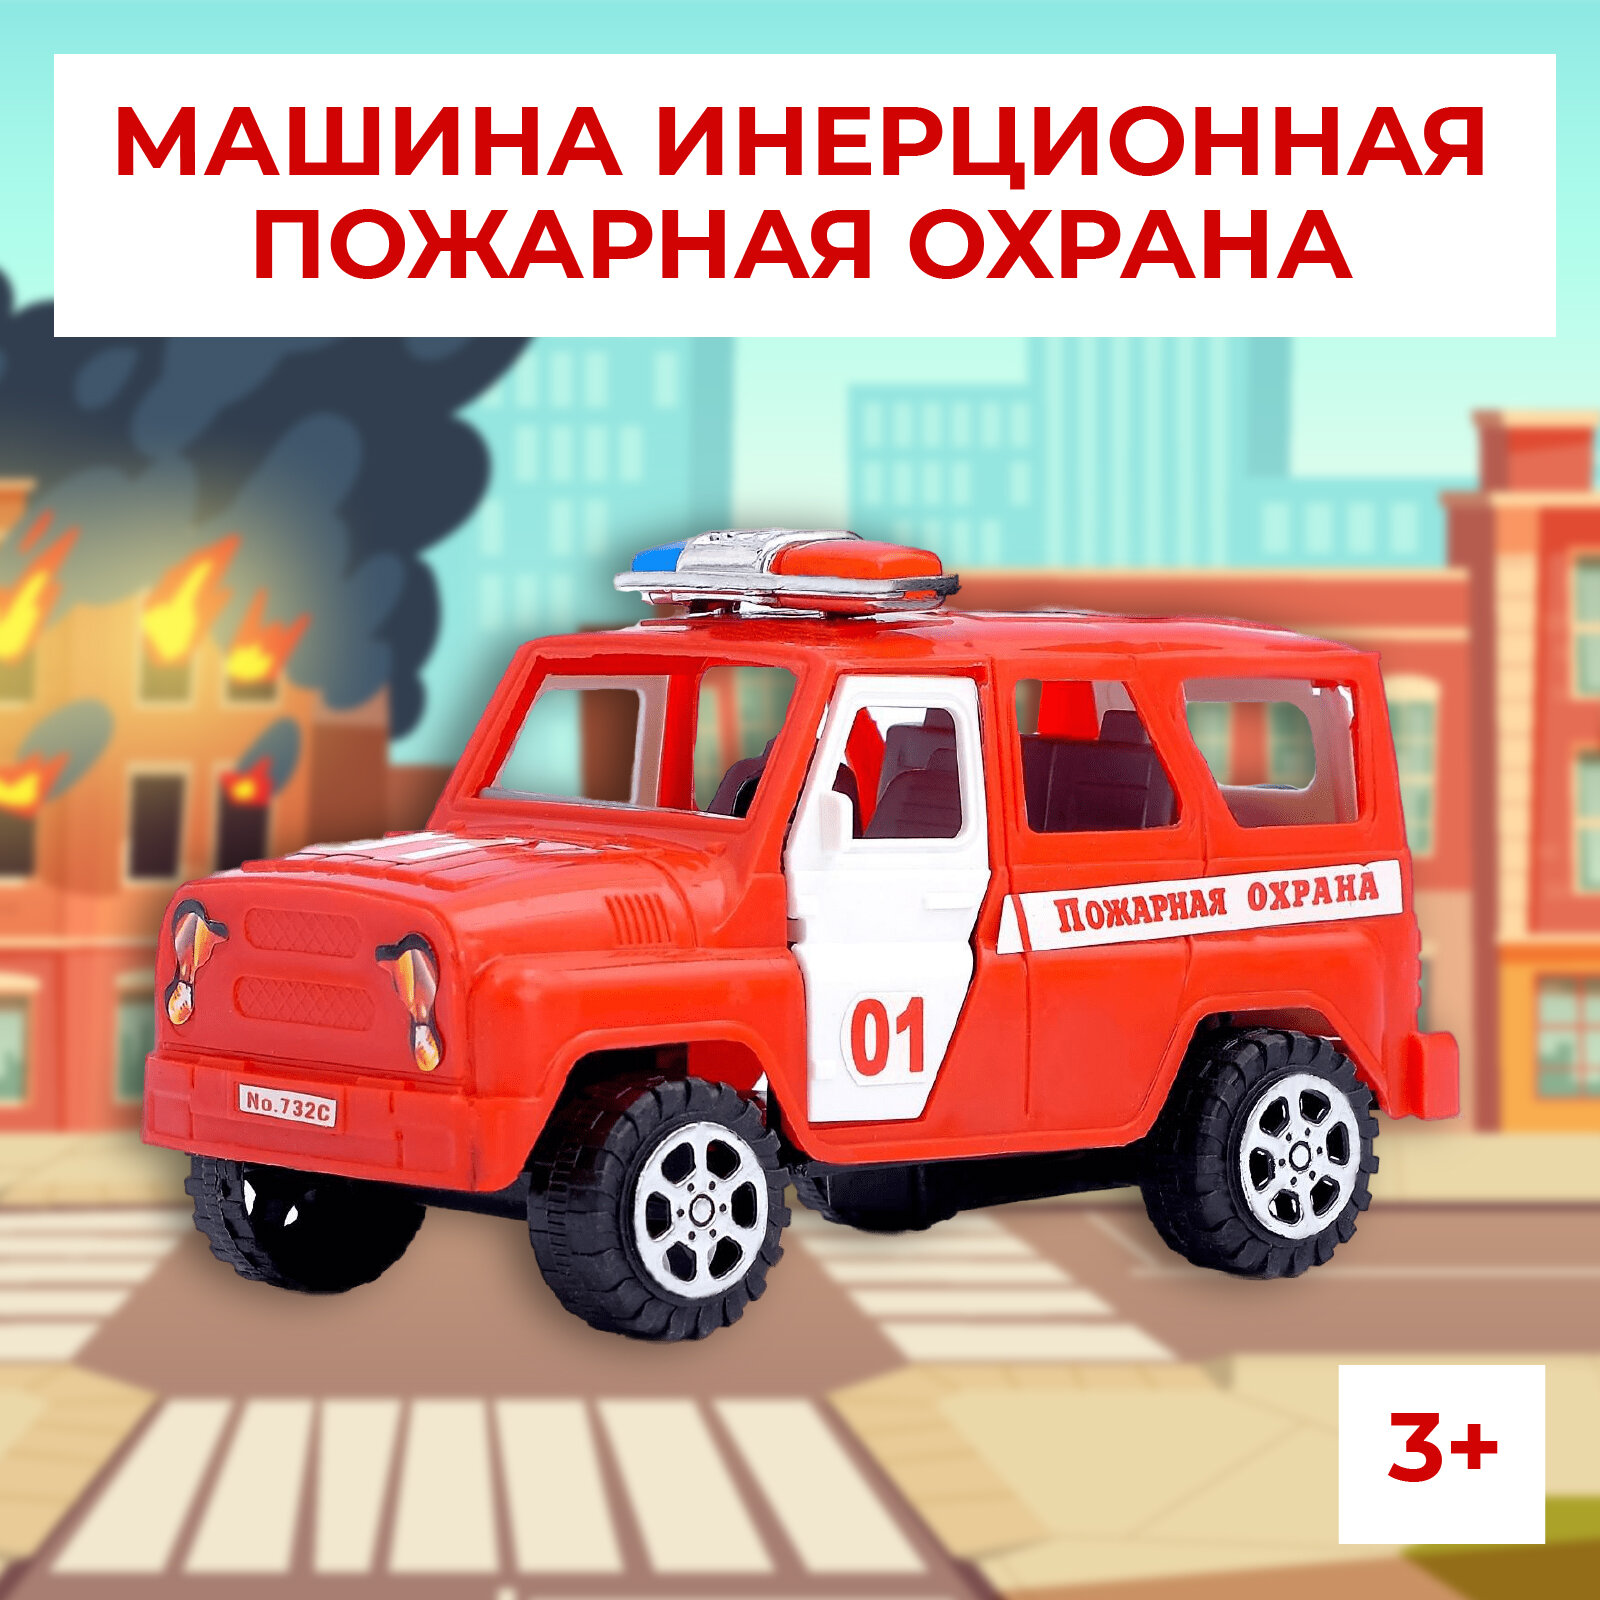 Машина инерционная "Пожарная охрана", с открывающимися дверьми